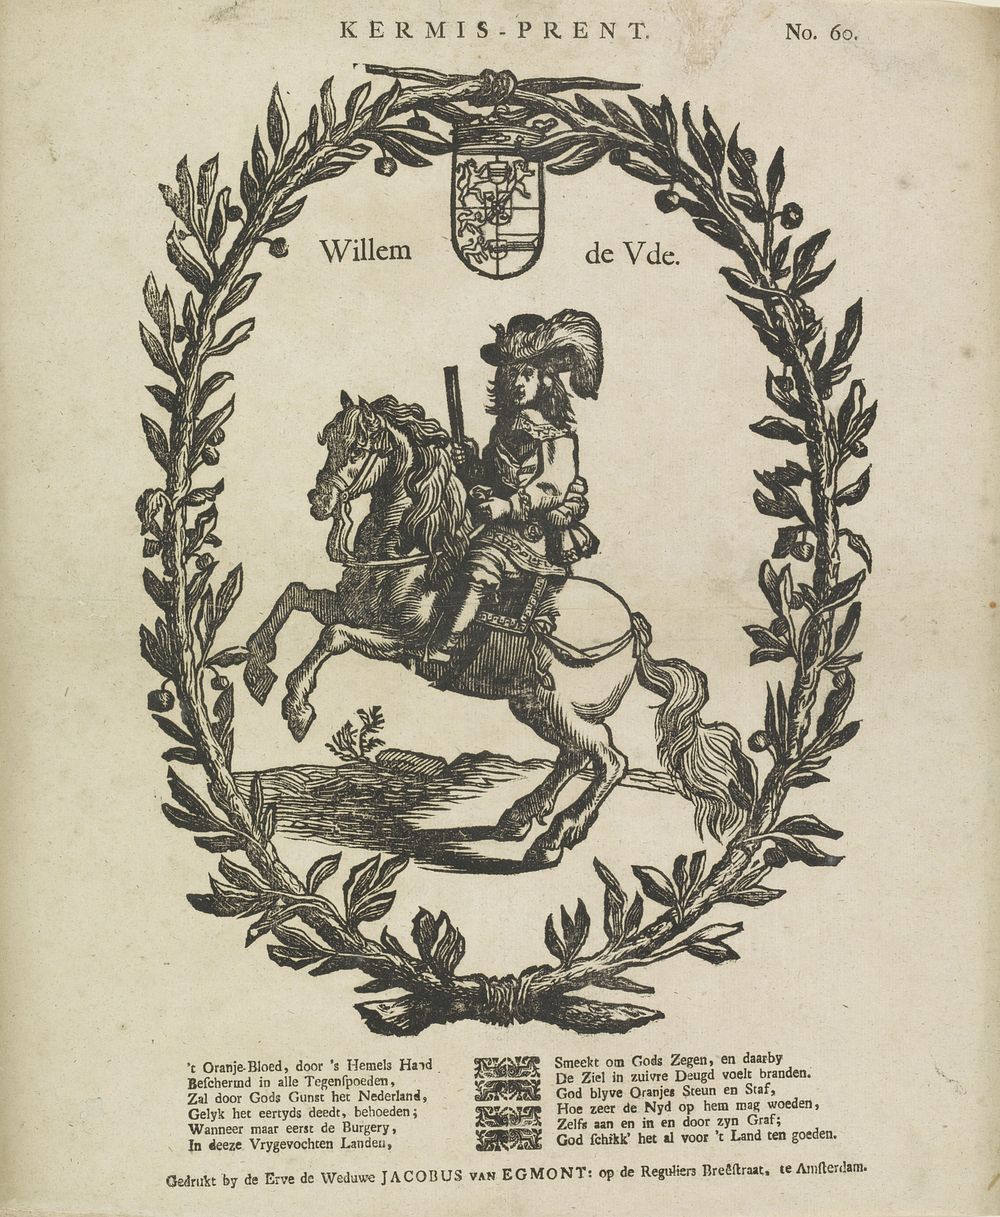 Kermis-prent / Willem de Vde (1761 - 1804) by Erven de Weduwe Jacobus van Egmont and anonymous